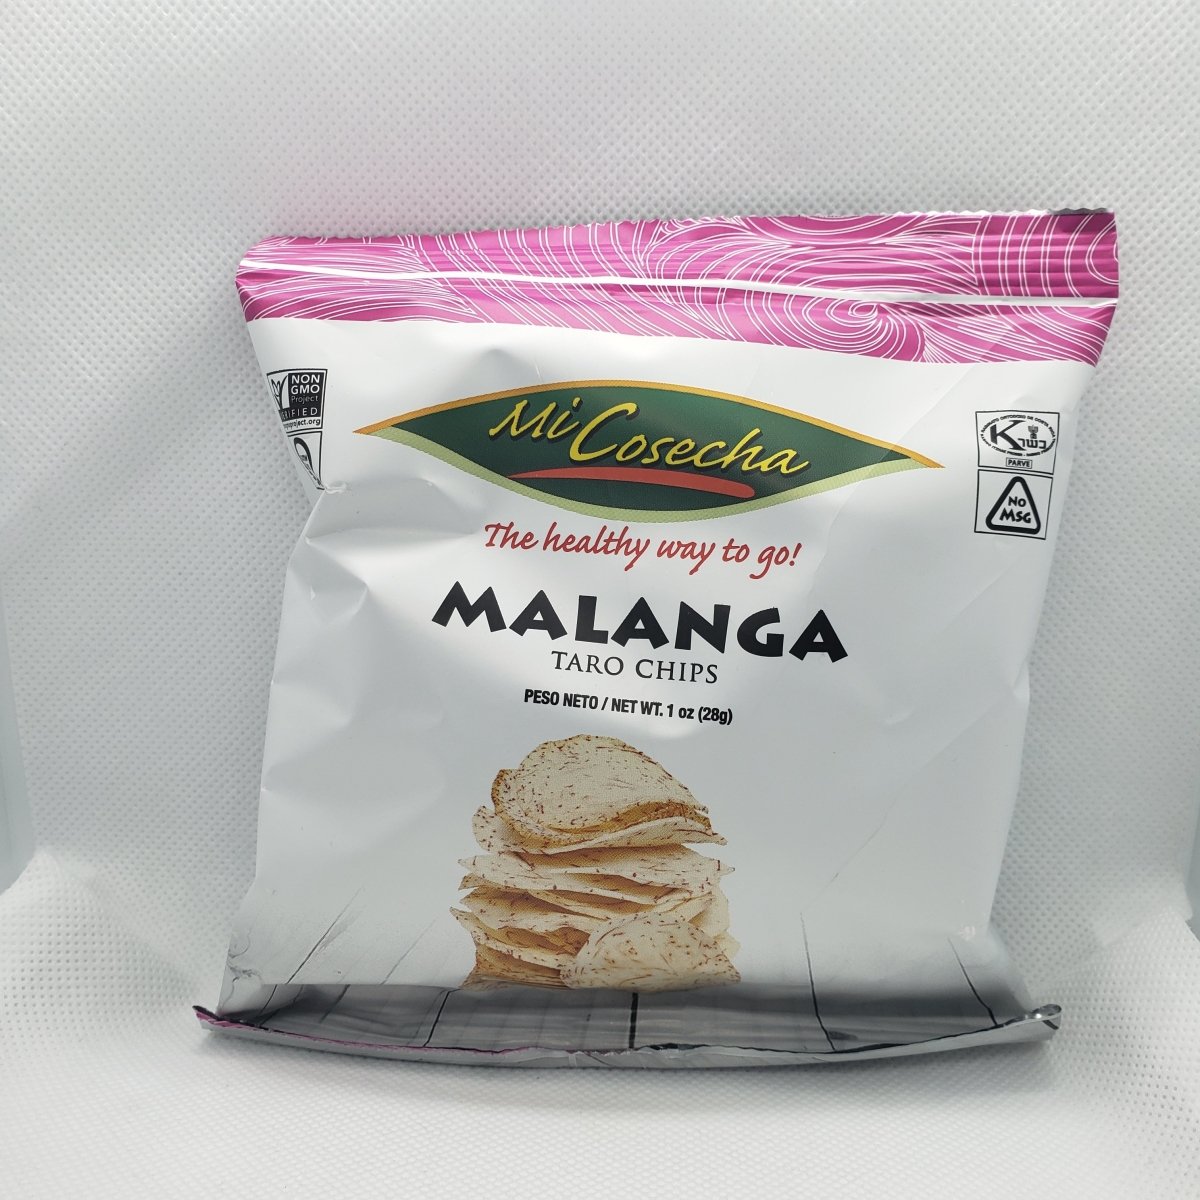 Malanga - Taro Chips - Snack - 1oz - 1 Bag